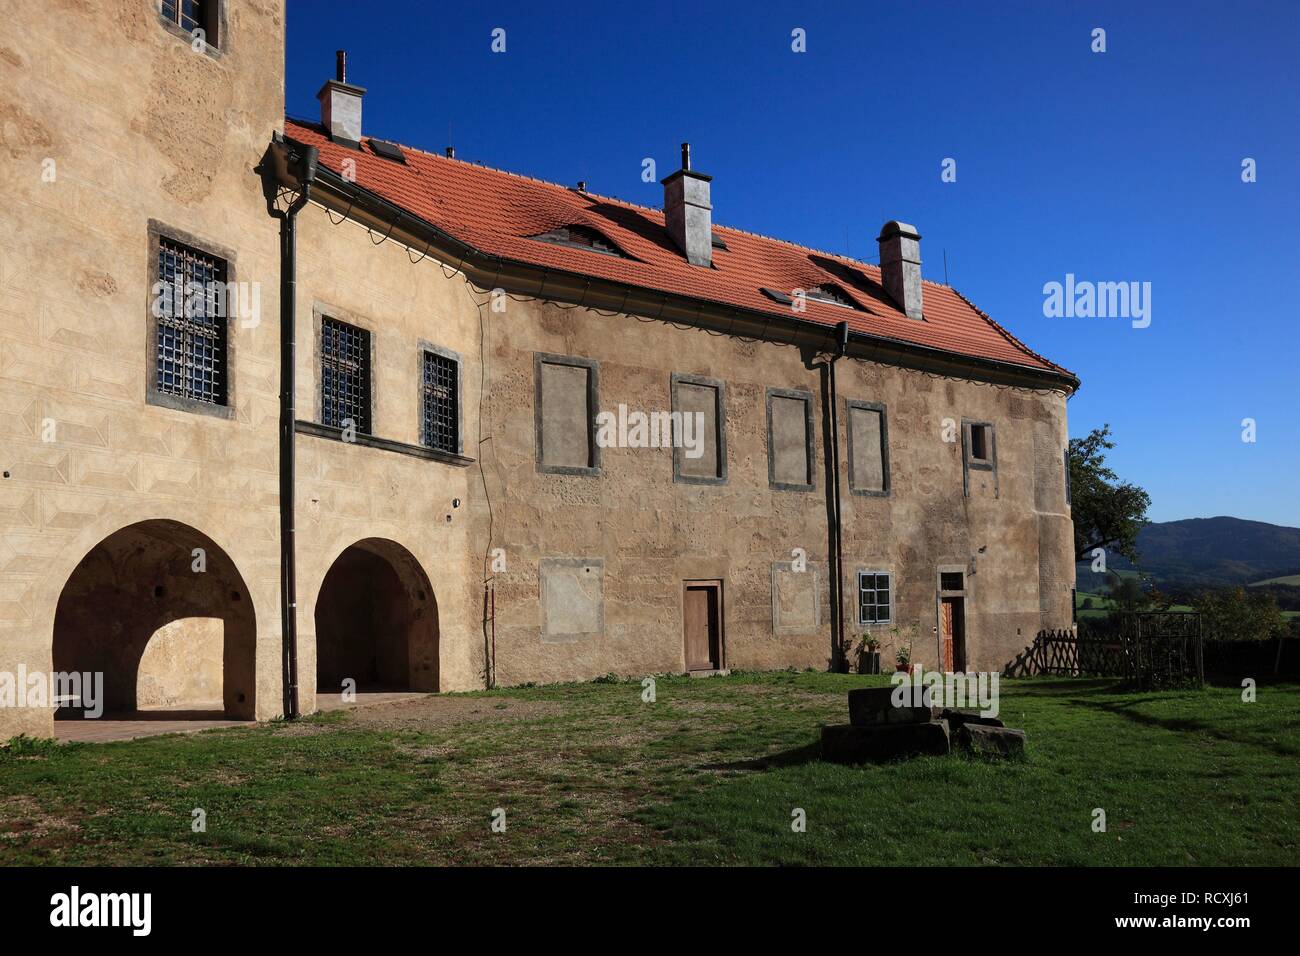 Grabstejn château près de Hradek nad Nisou, district de Liberec, au nord de la Bohême, la Bohême, République Tchèque, Europe Banque D'Images